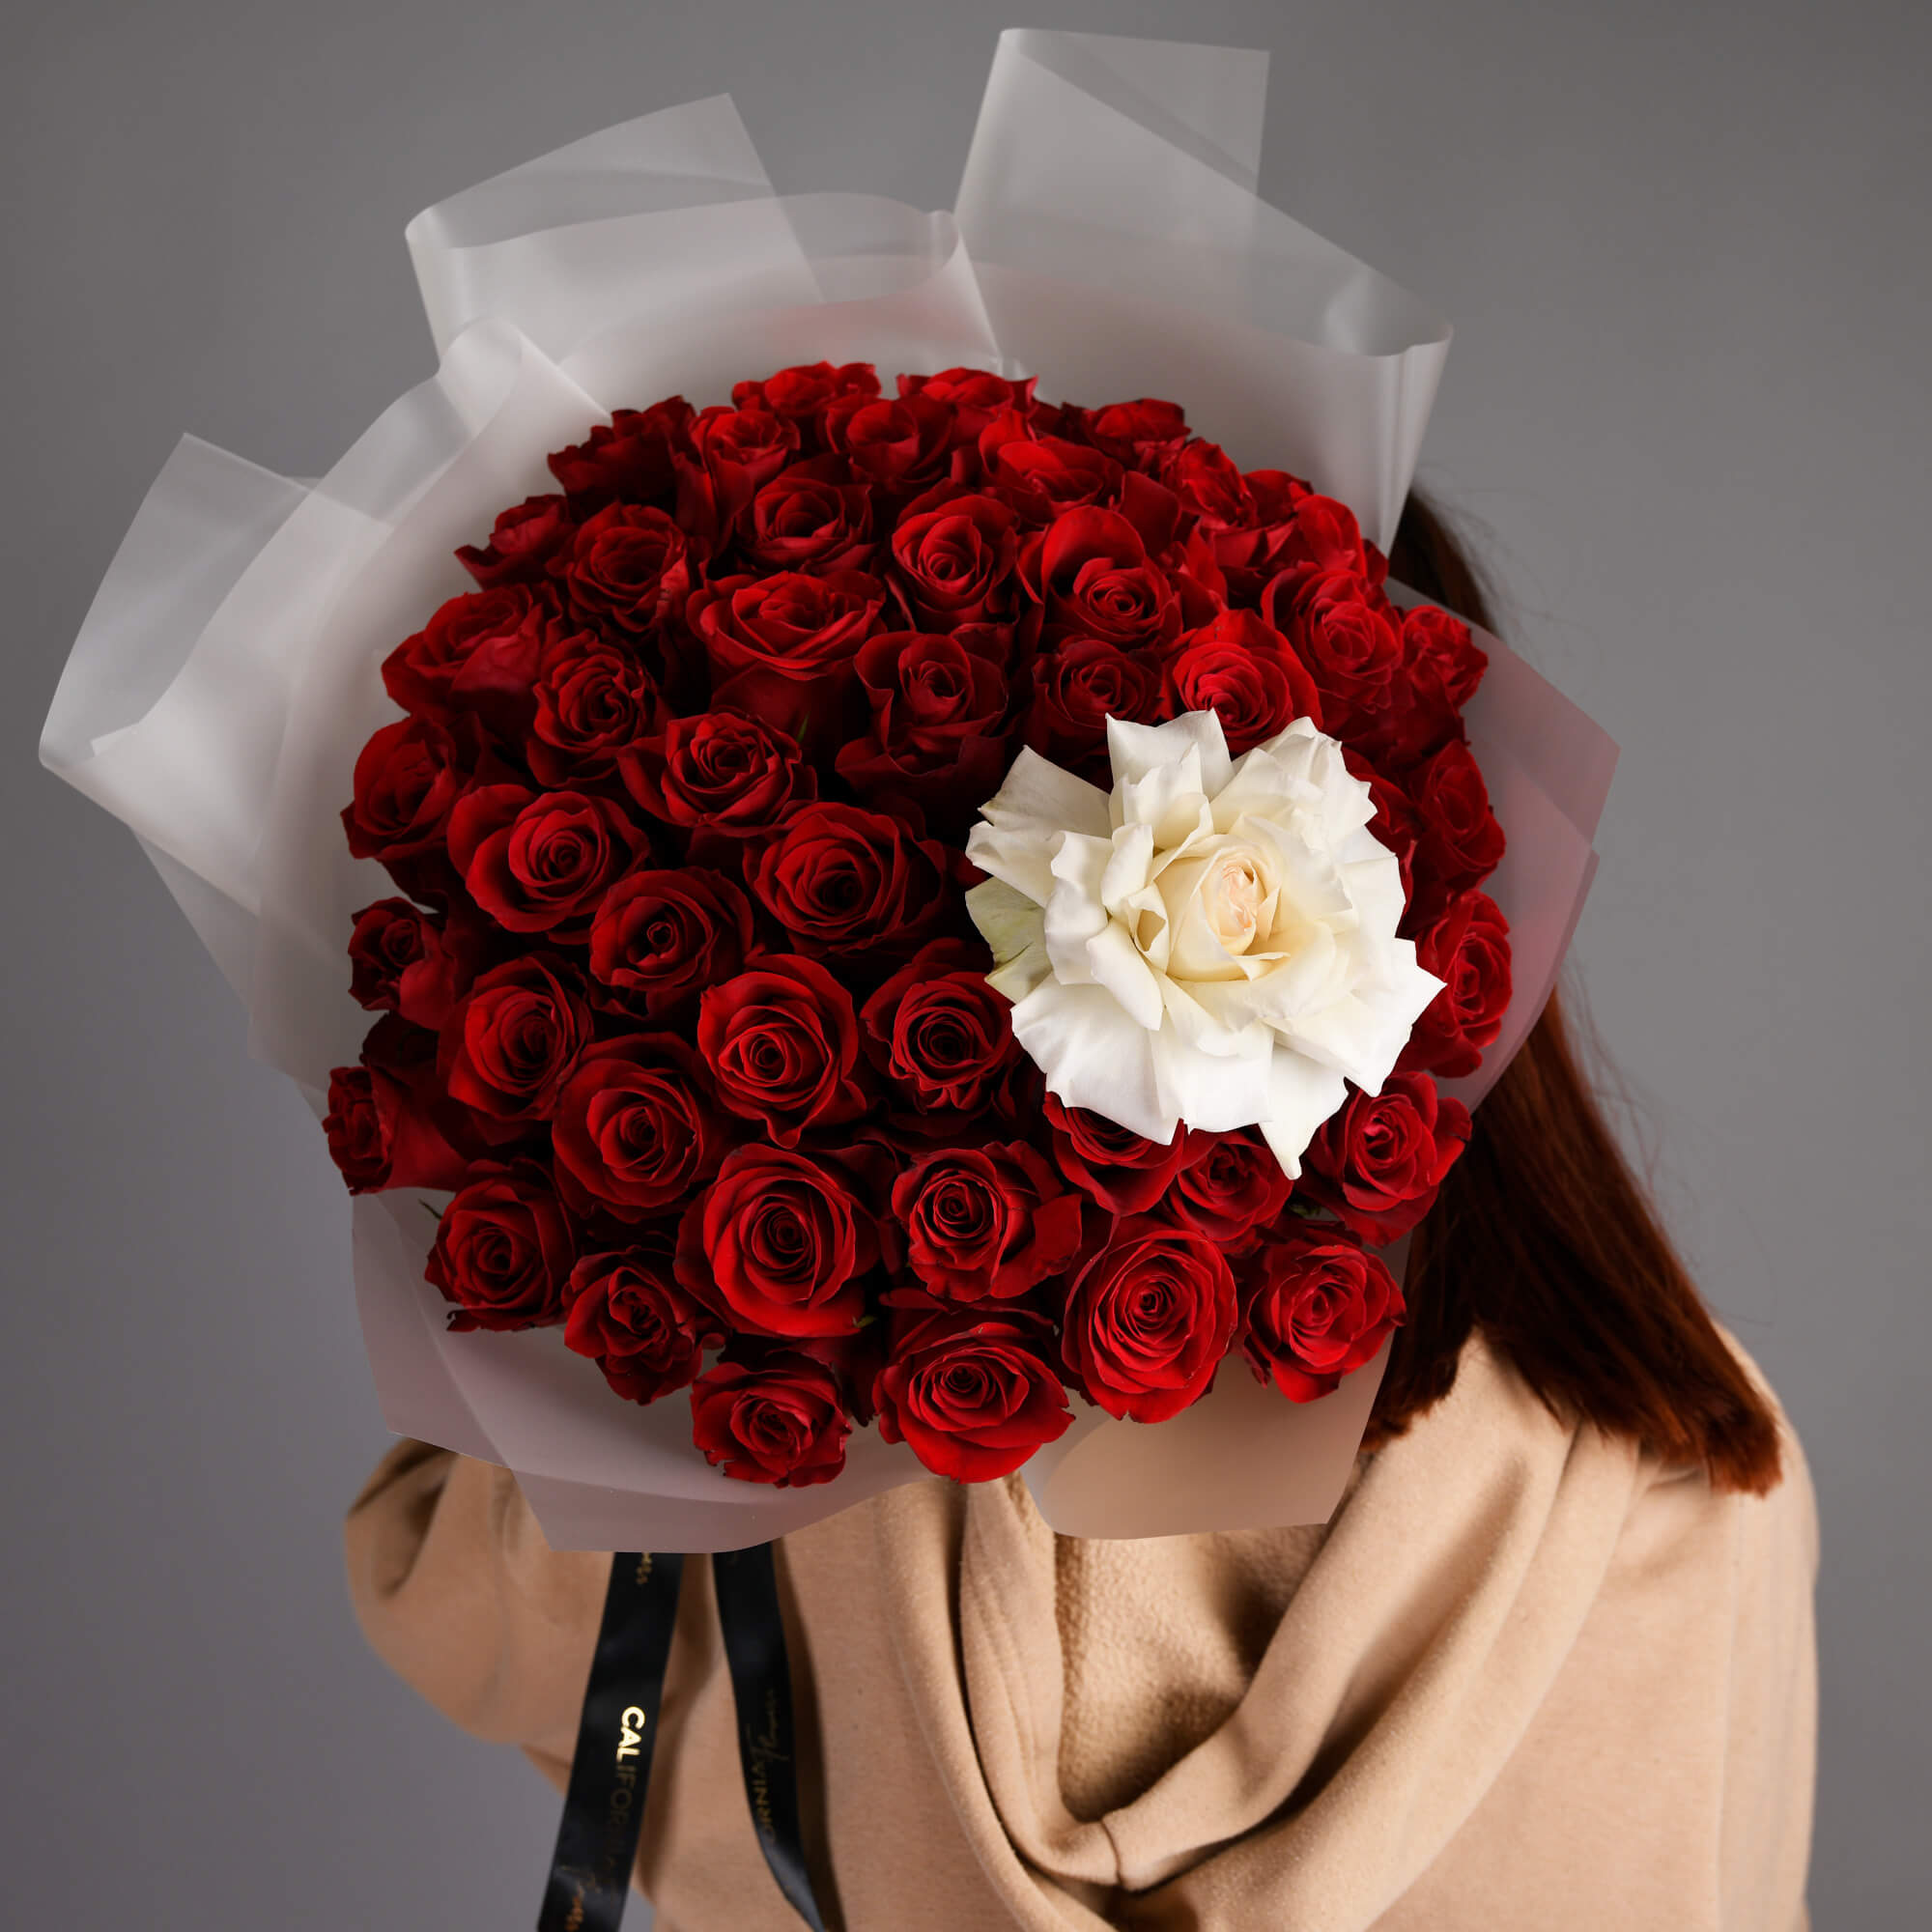 Buchet cu 50 trandafiri rosii si un trandafir alb